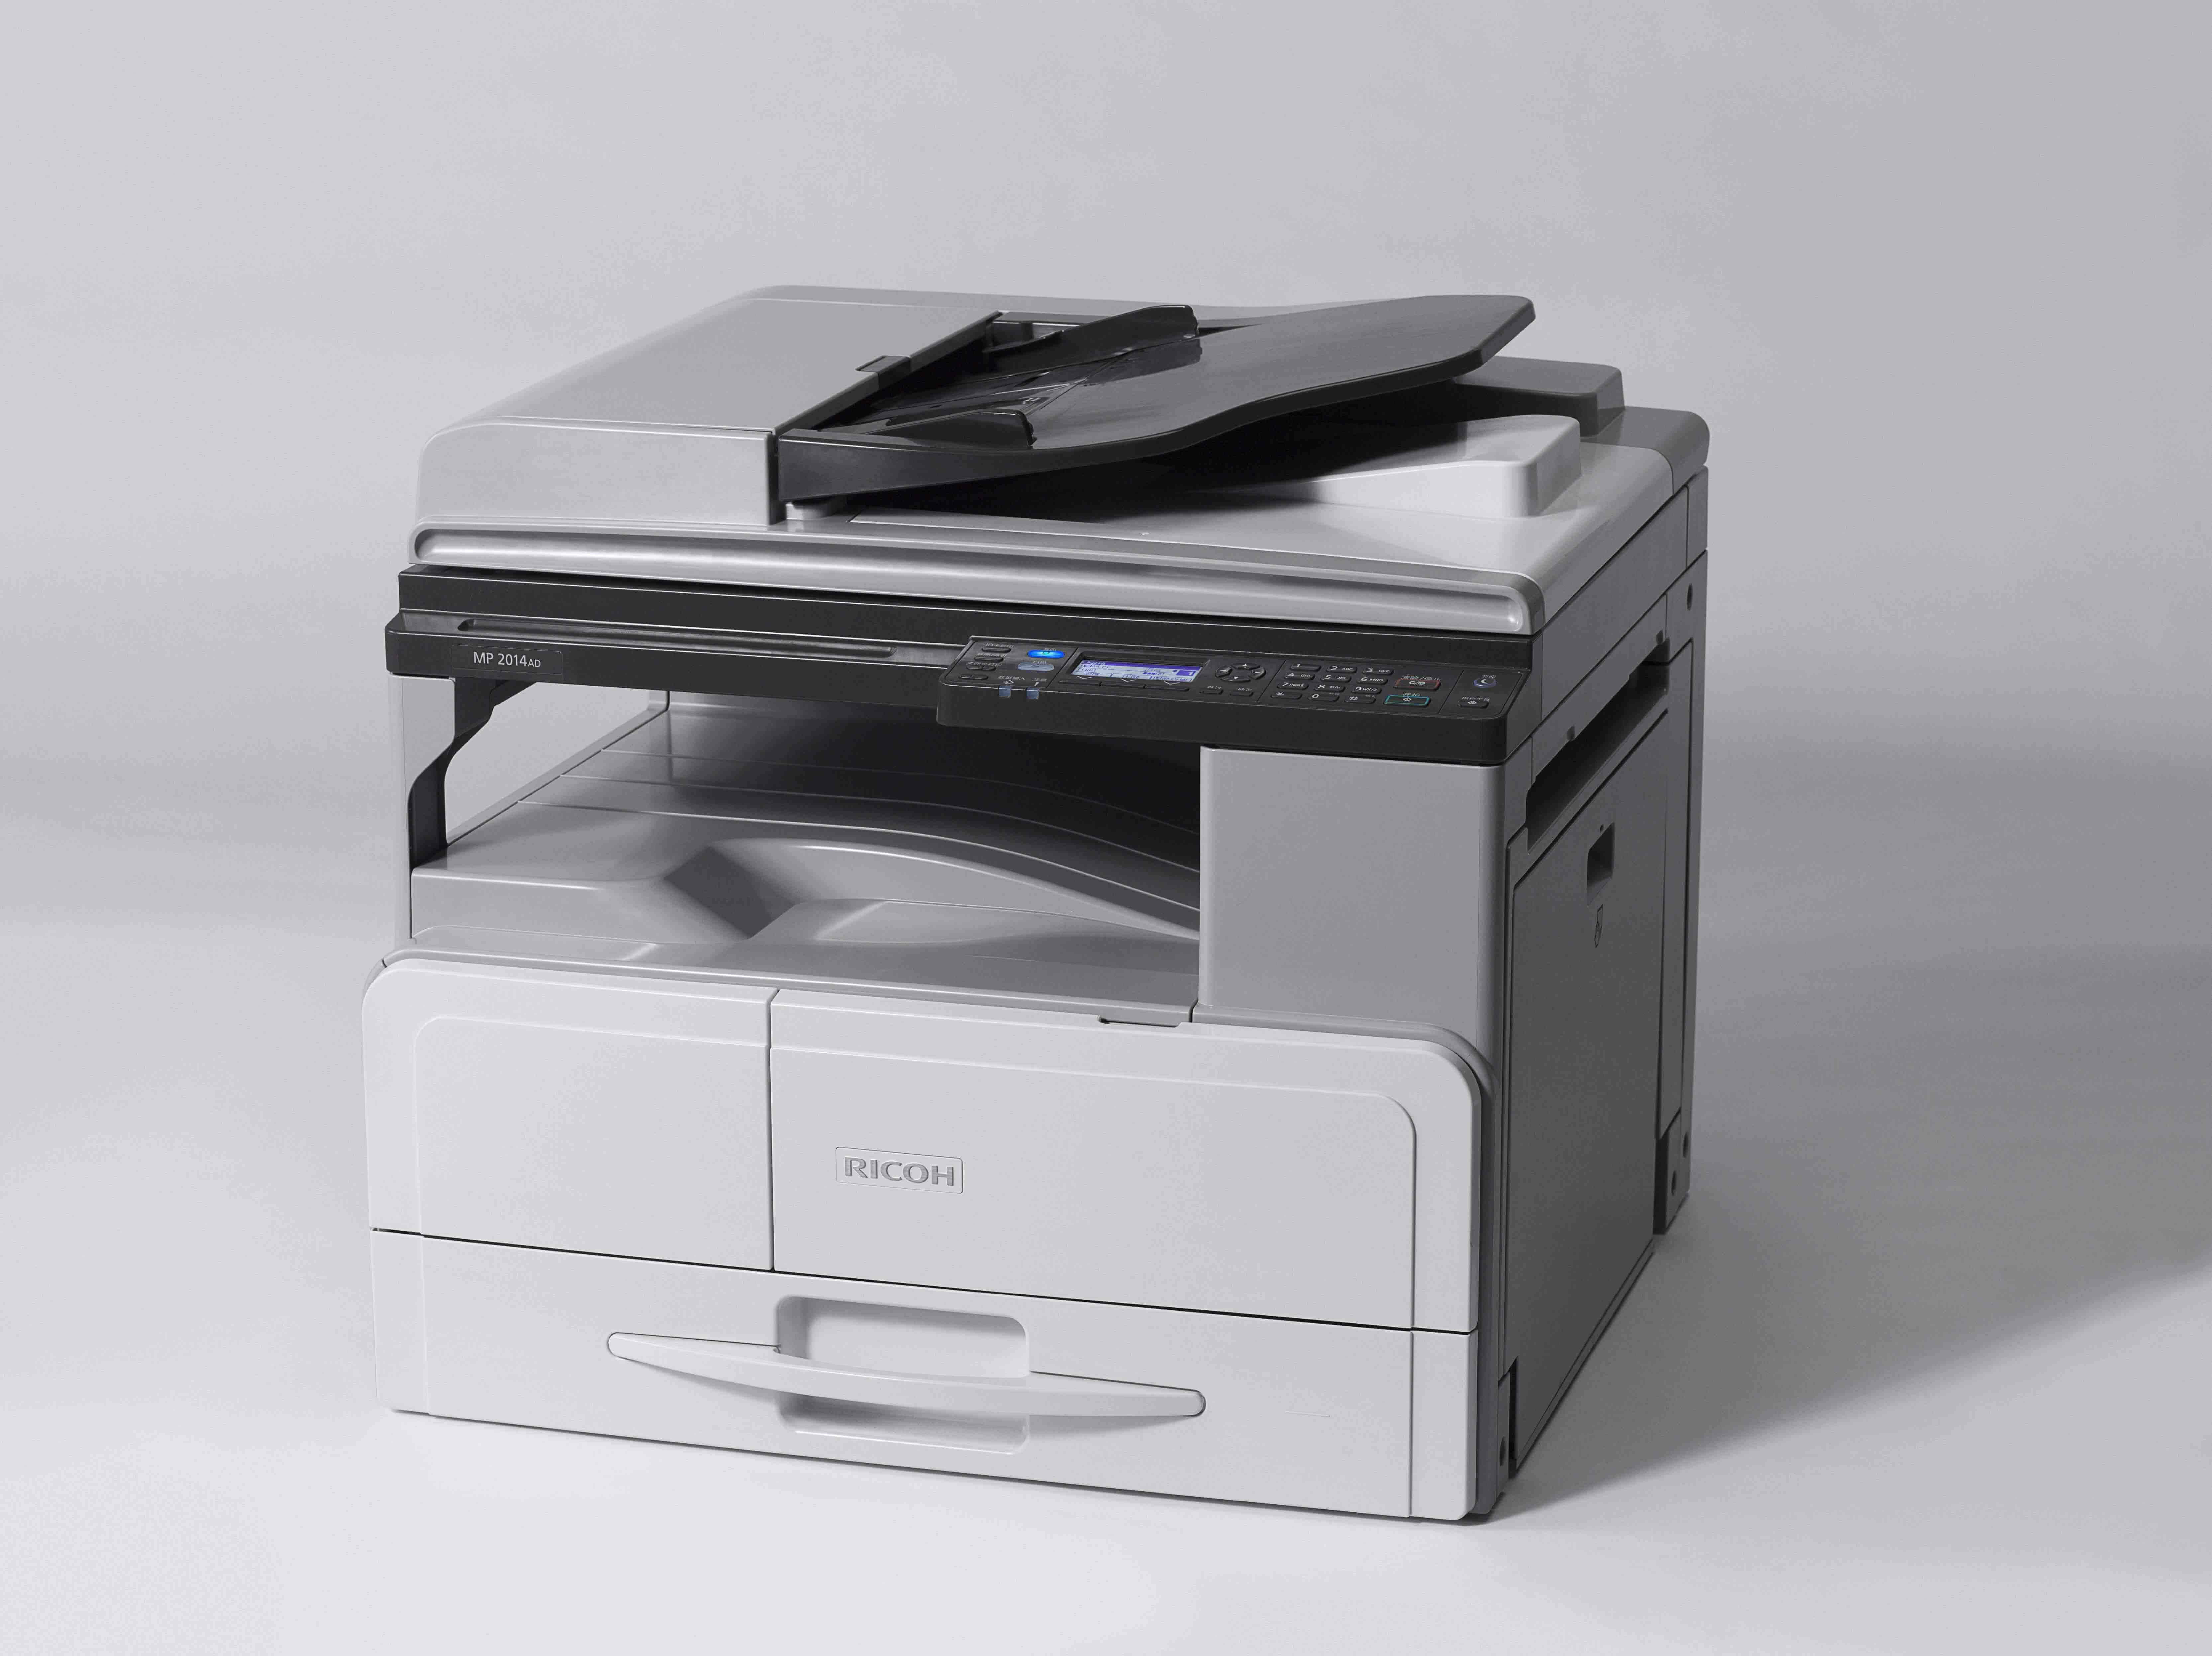 孕妇使用小型复印机安全距离为1米